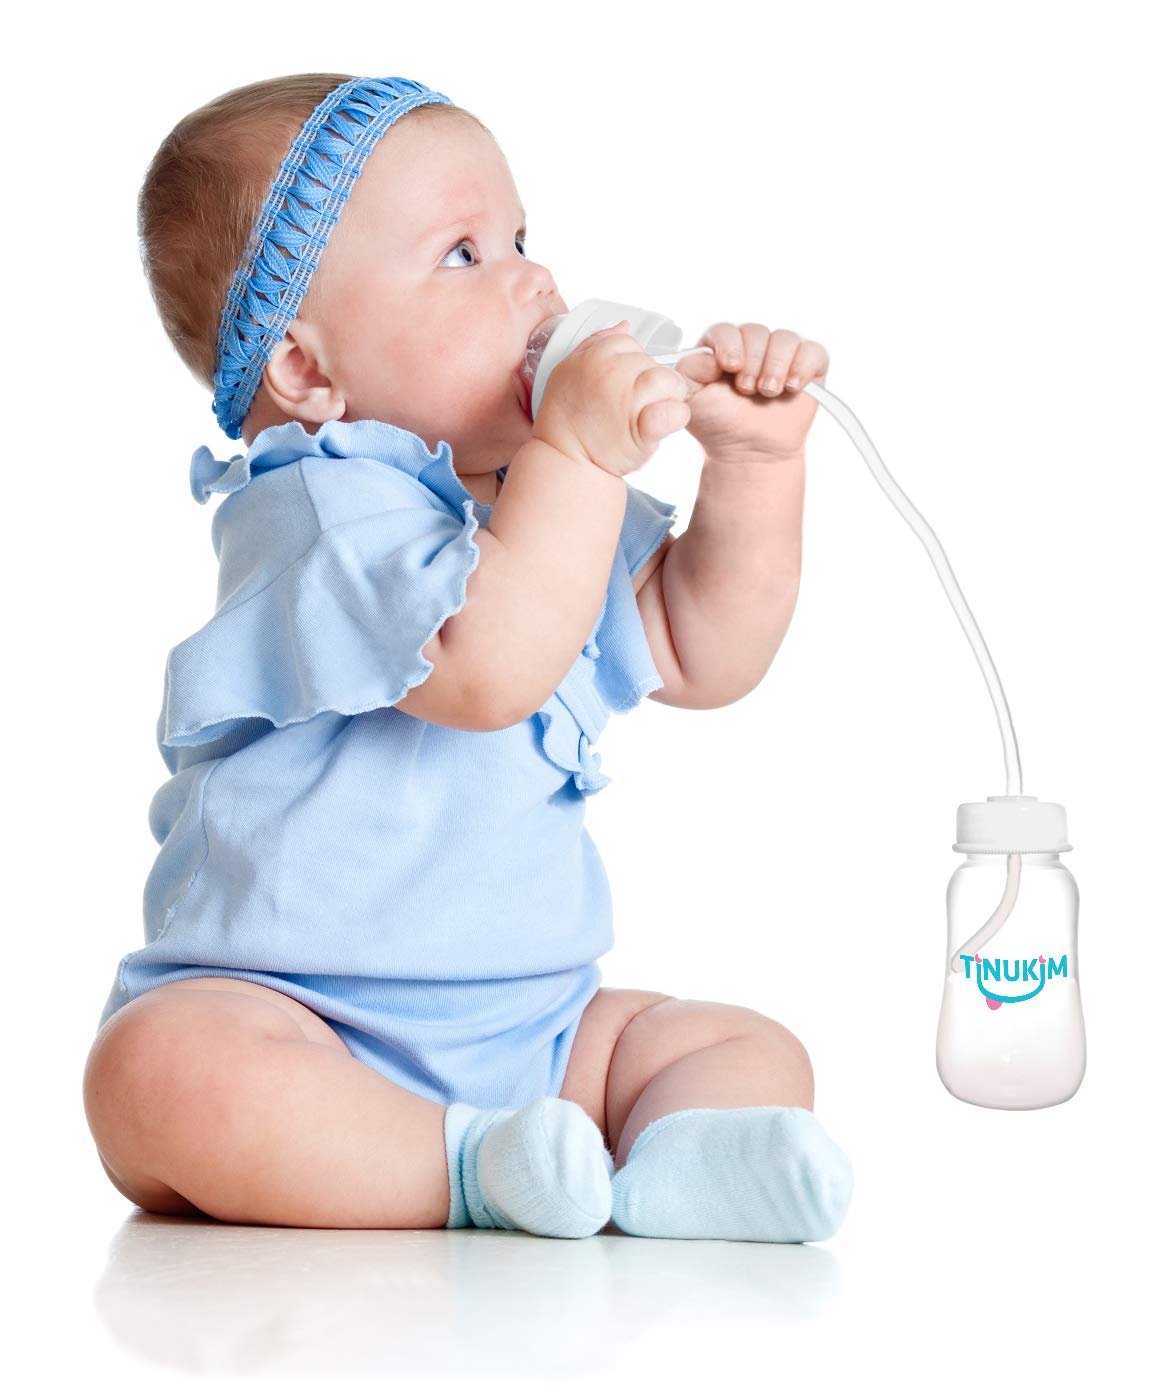 Tinukim iFeed Baby Bottle - 4oz Tube, Self-Feeding, Anti-Colic, White - 2-Pack (Size: 2 Count)